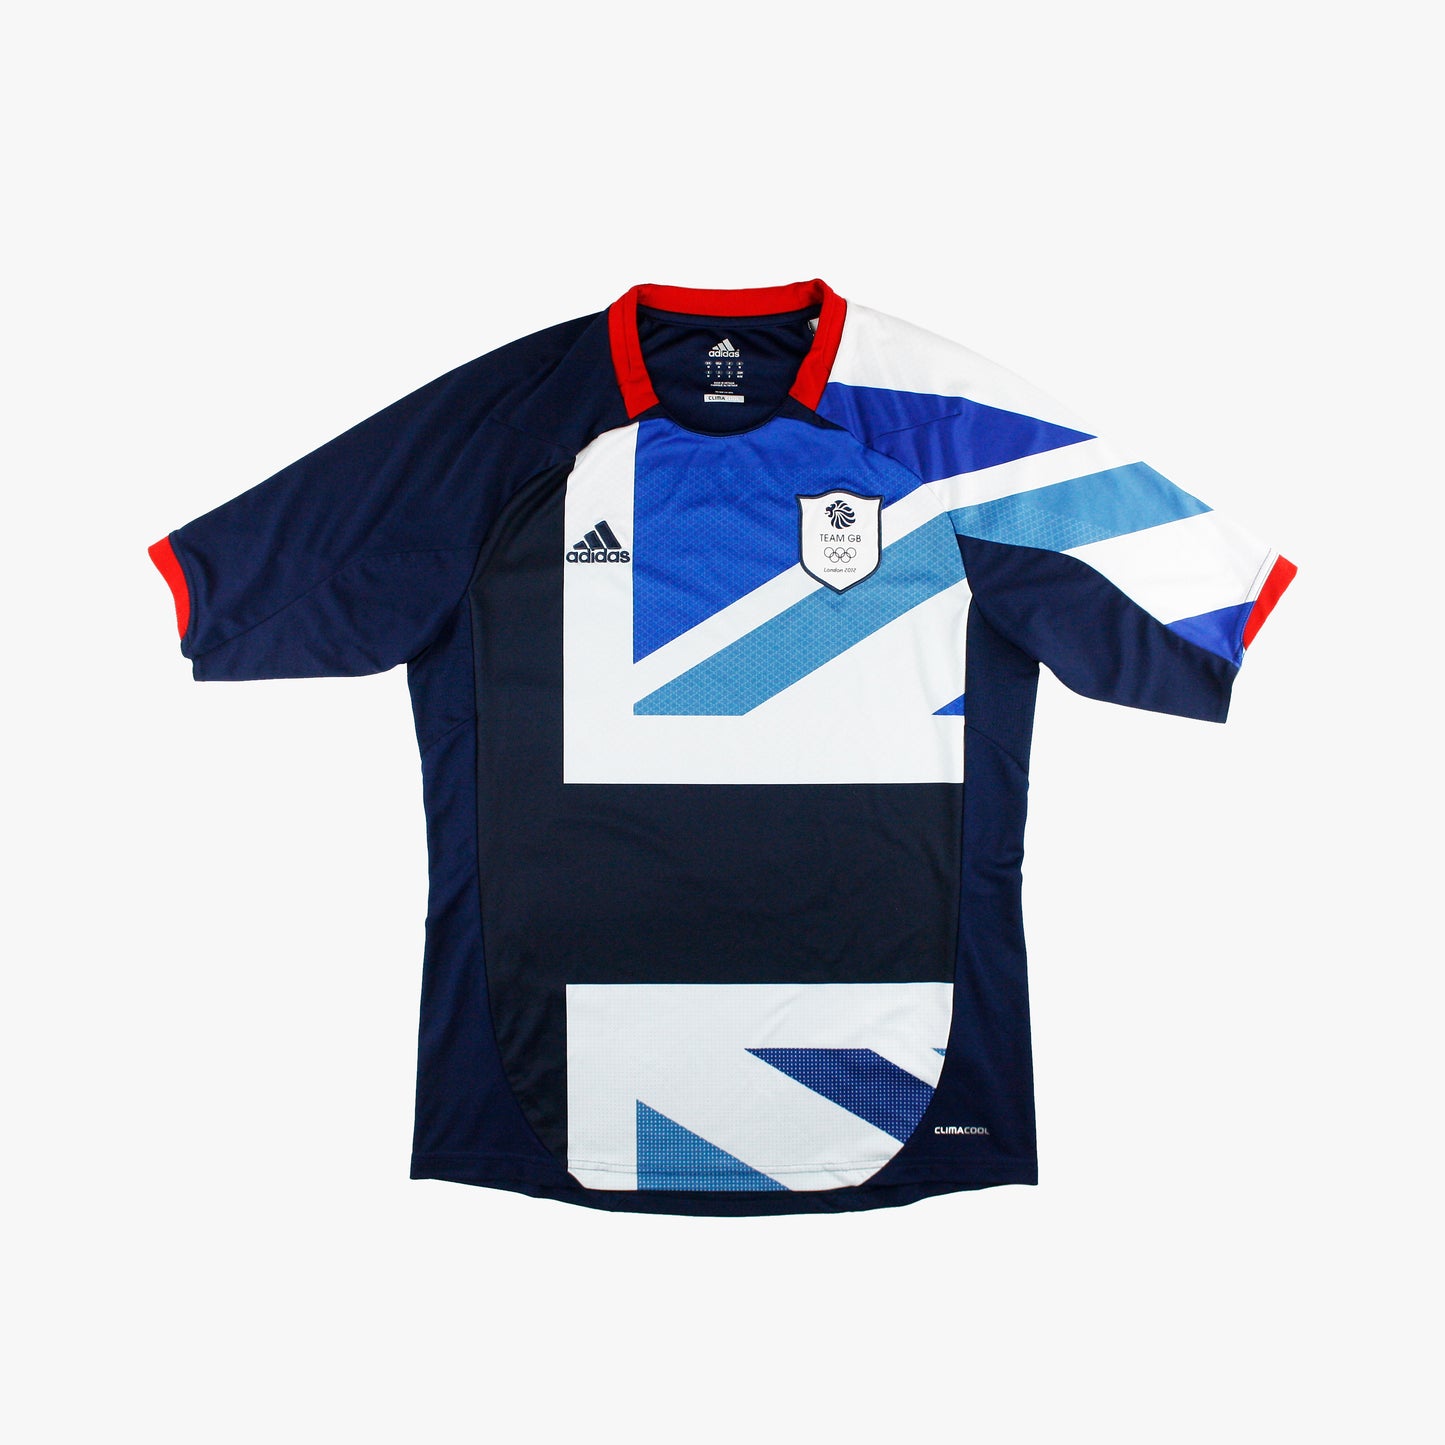 Team GB 2012 • Camiseta Local • M